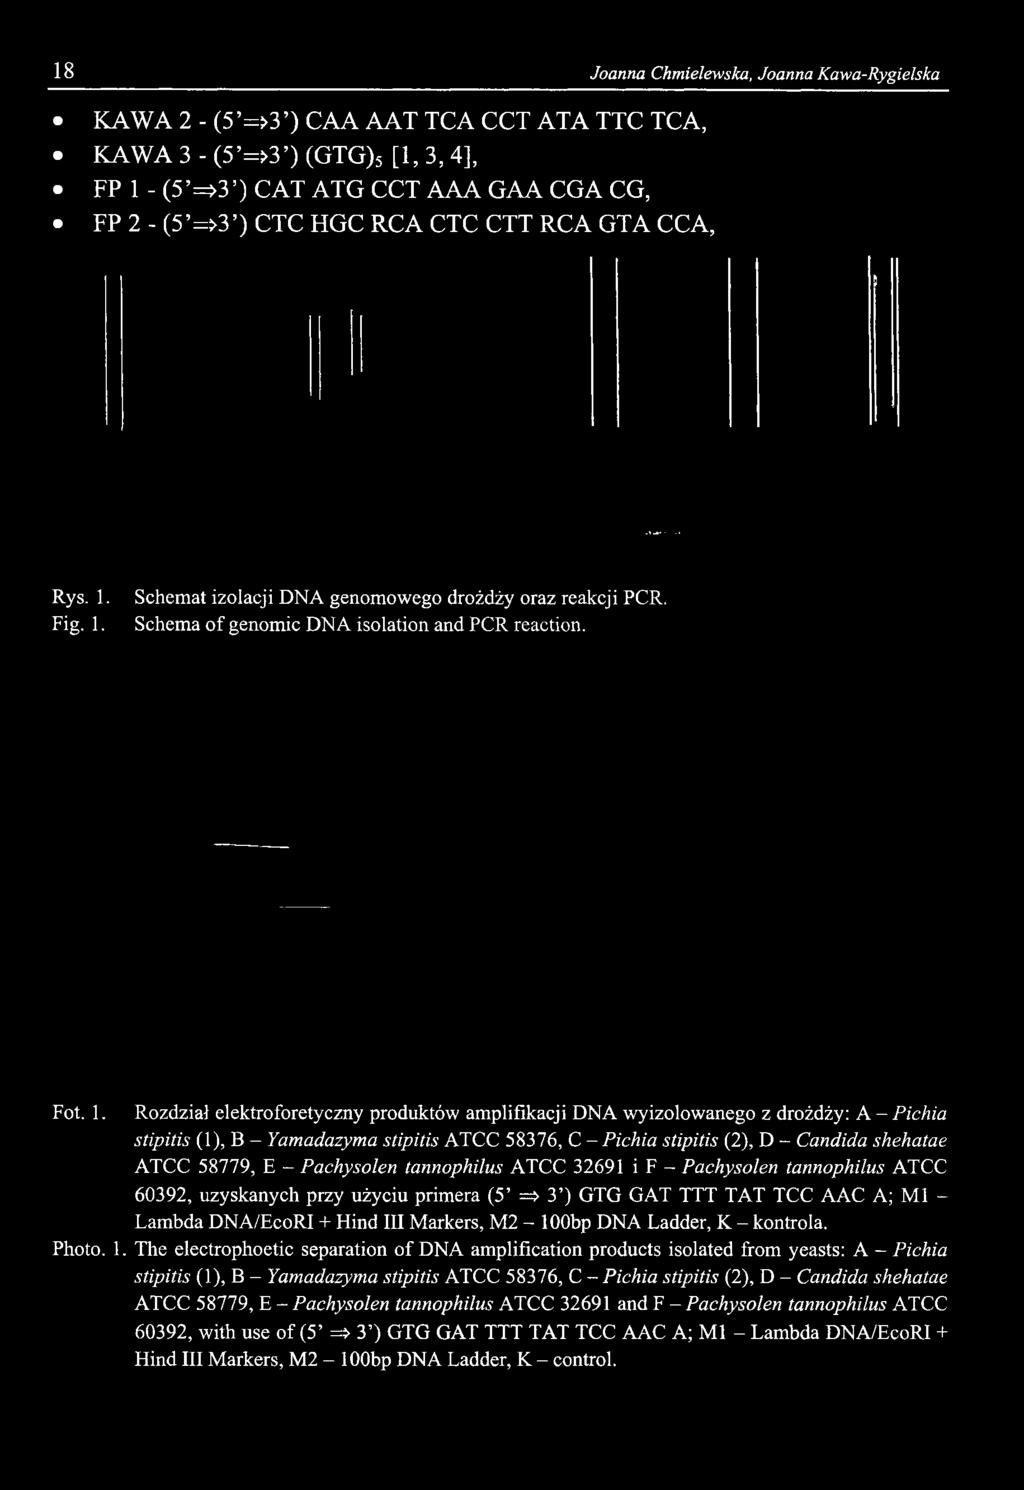 Rozdział elektroforetyczny produktów amplifikacji DNA wyizolowanego z drożdży: A - Pichia 60392, uzyskanych przy użyciu primera (5 => 3 )